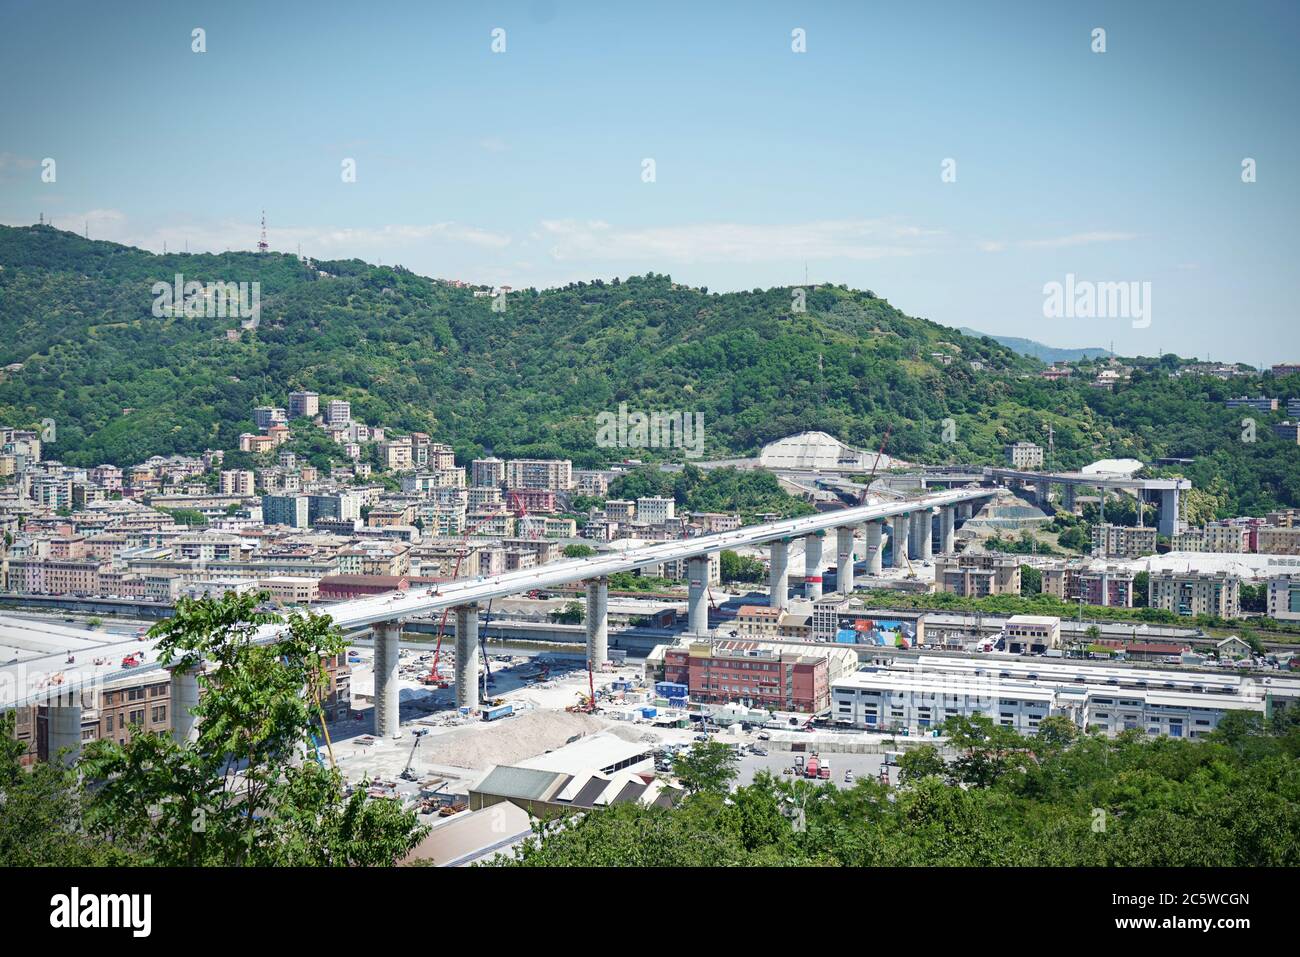 Chantier de construction du nouveau pont de Gênes conçu par Renzo Piano. Gênes, Italie - juin 2020 Banque D'Images